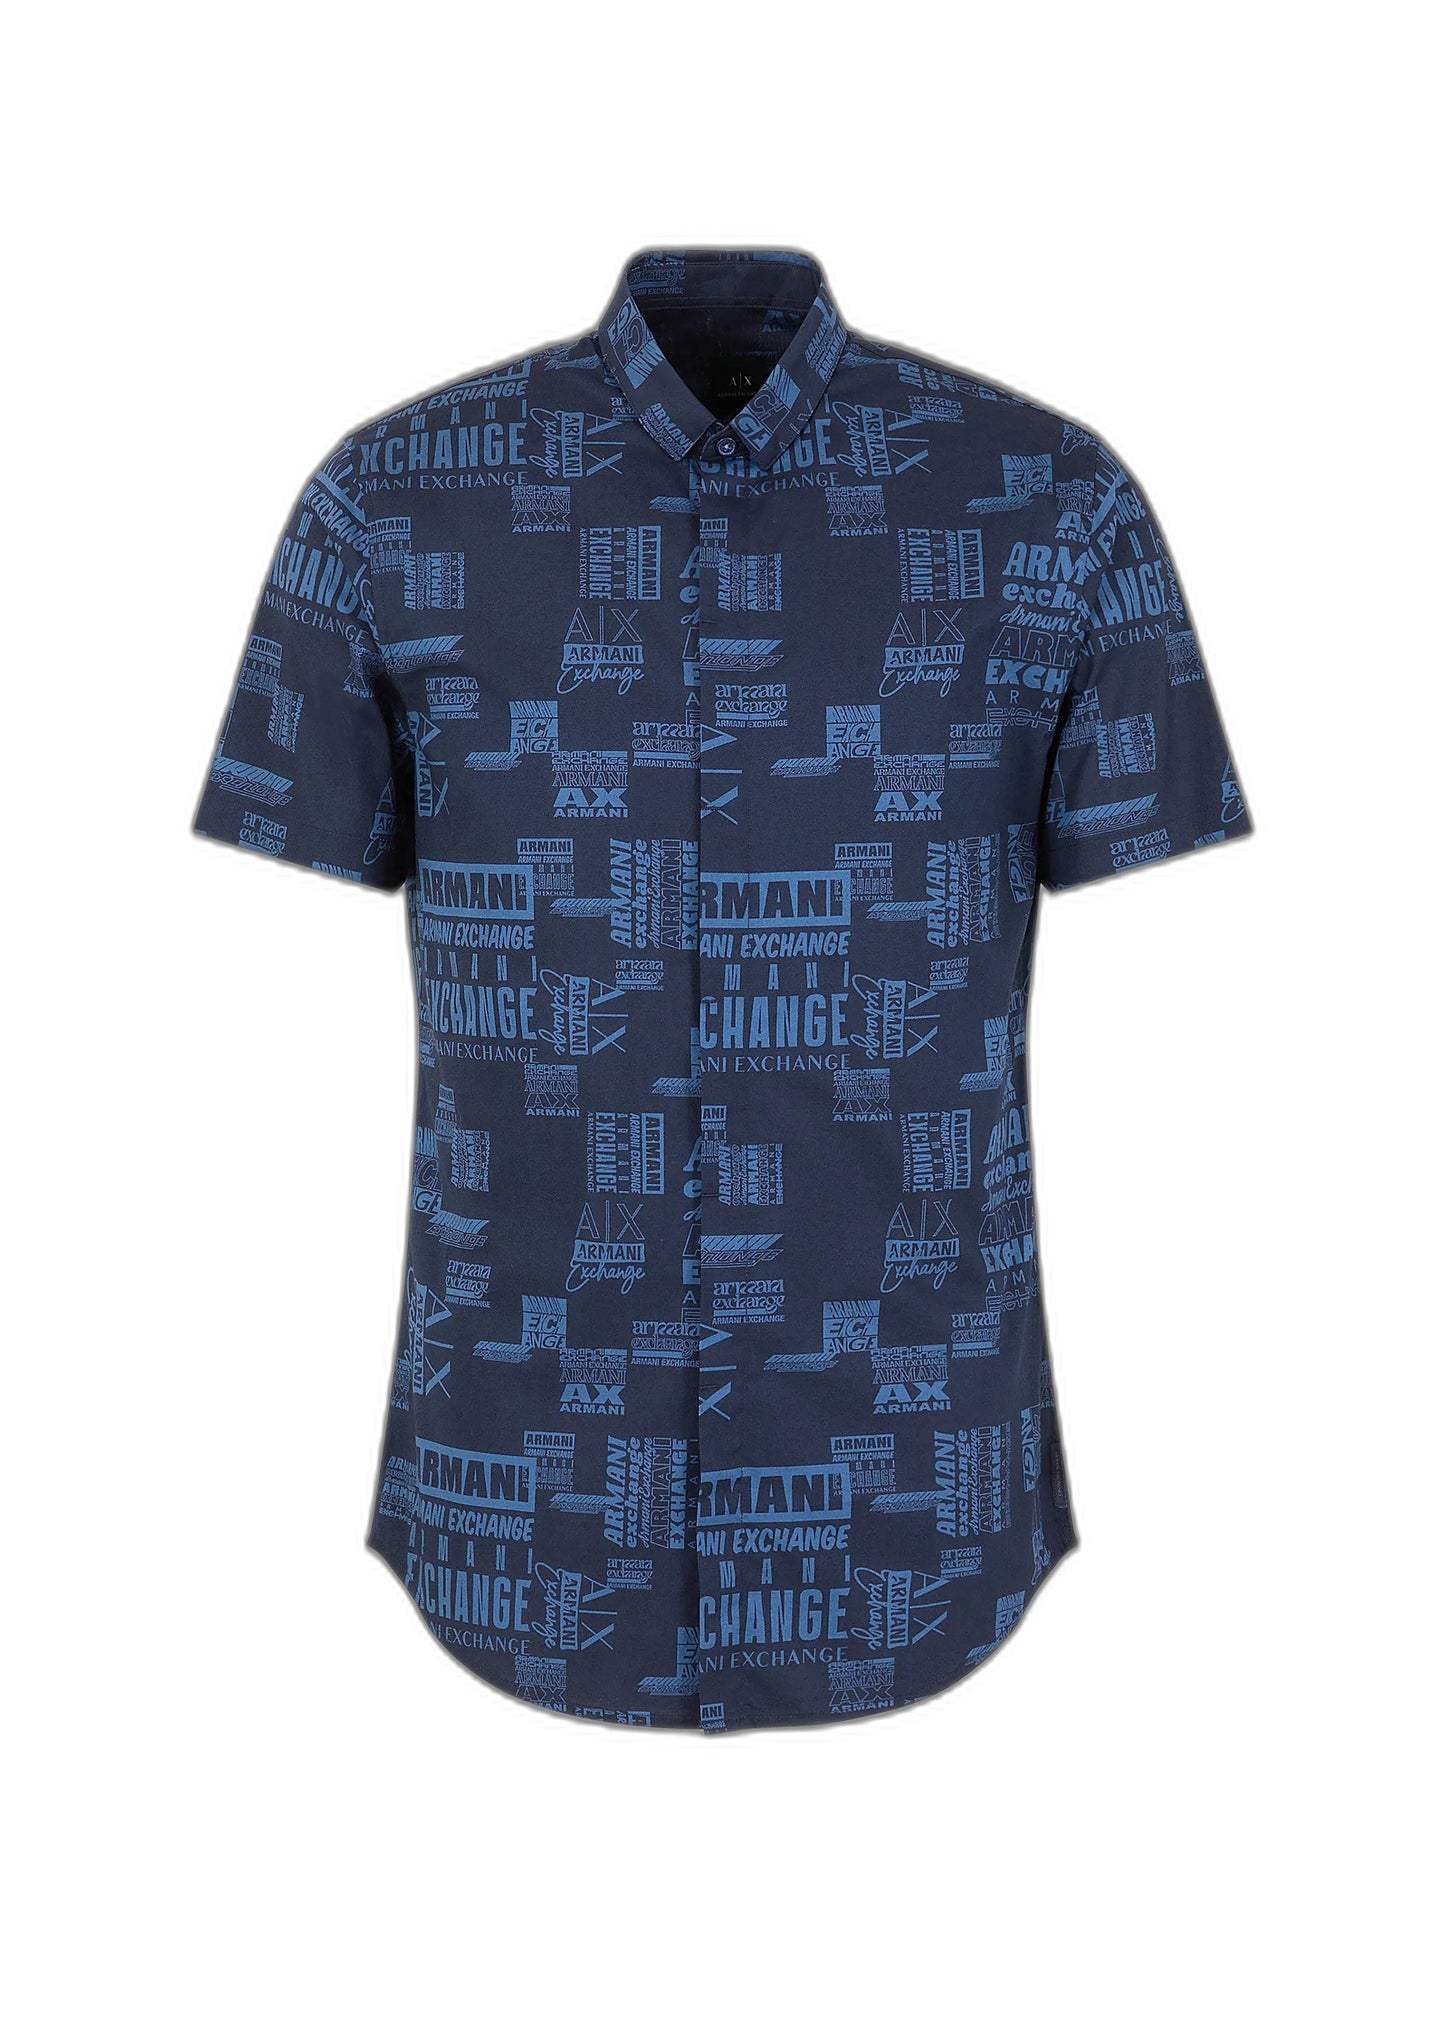 Marchio: Armani Exchange - Genere: Uomo - Tipologia: Camicie - Stagione: PrimaveColore: blu, Taglia: S